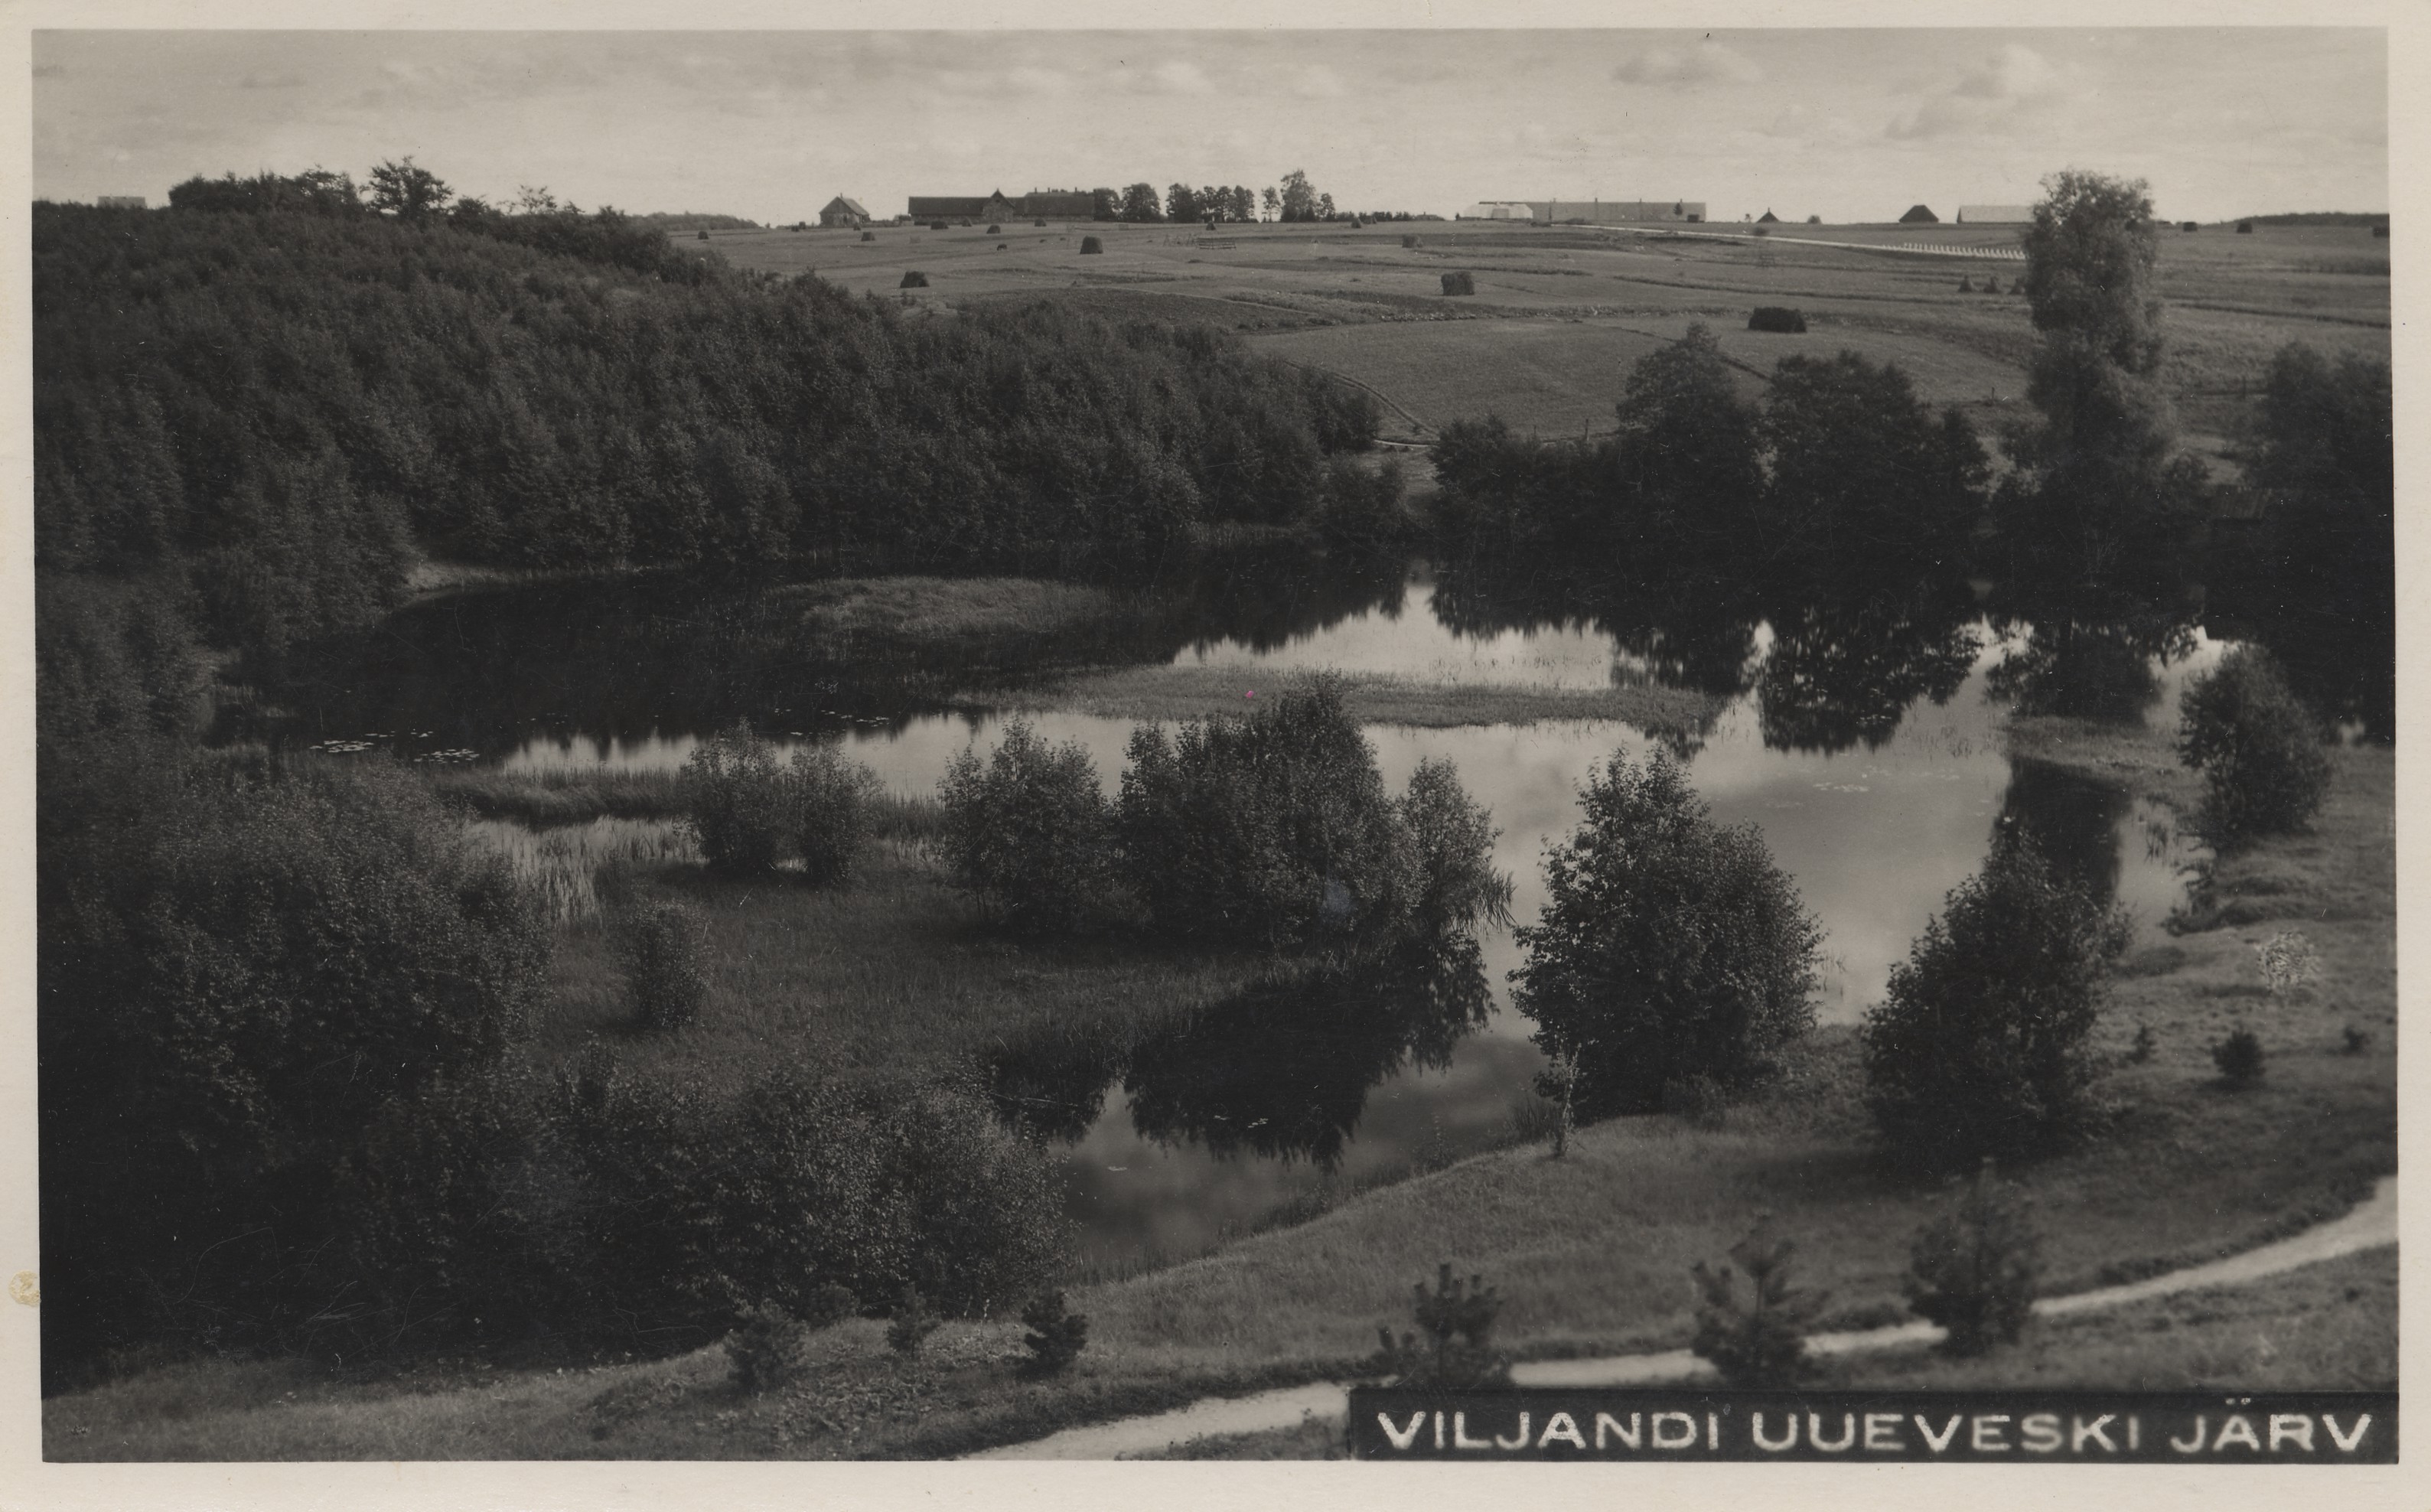 Lake Viljandi Uueveski